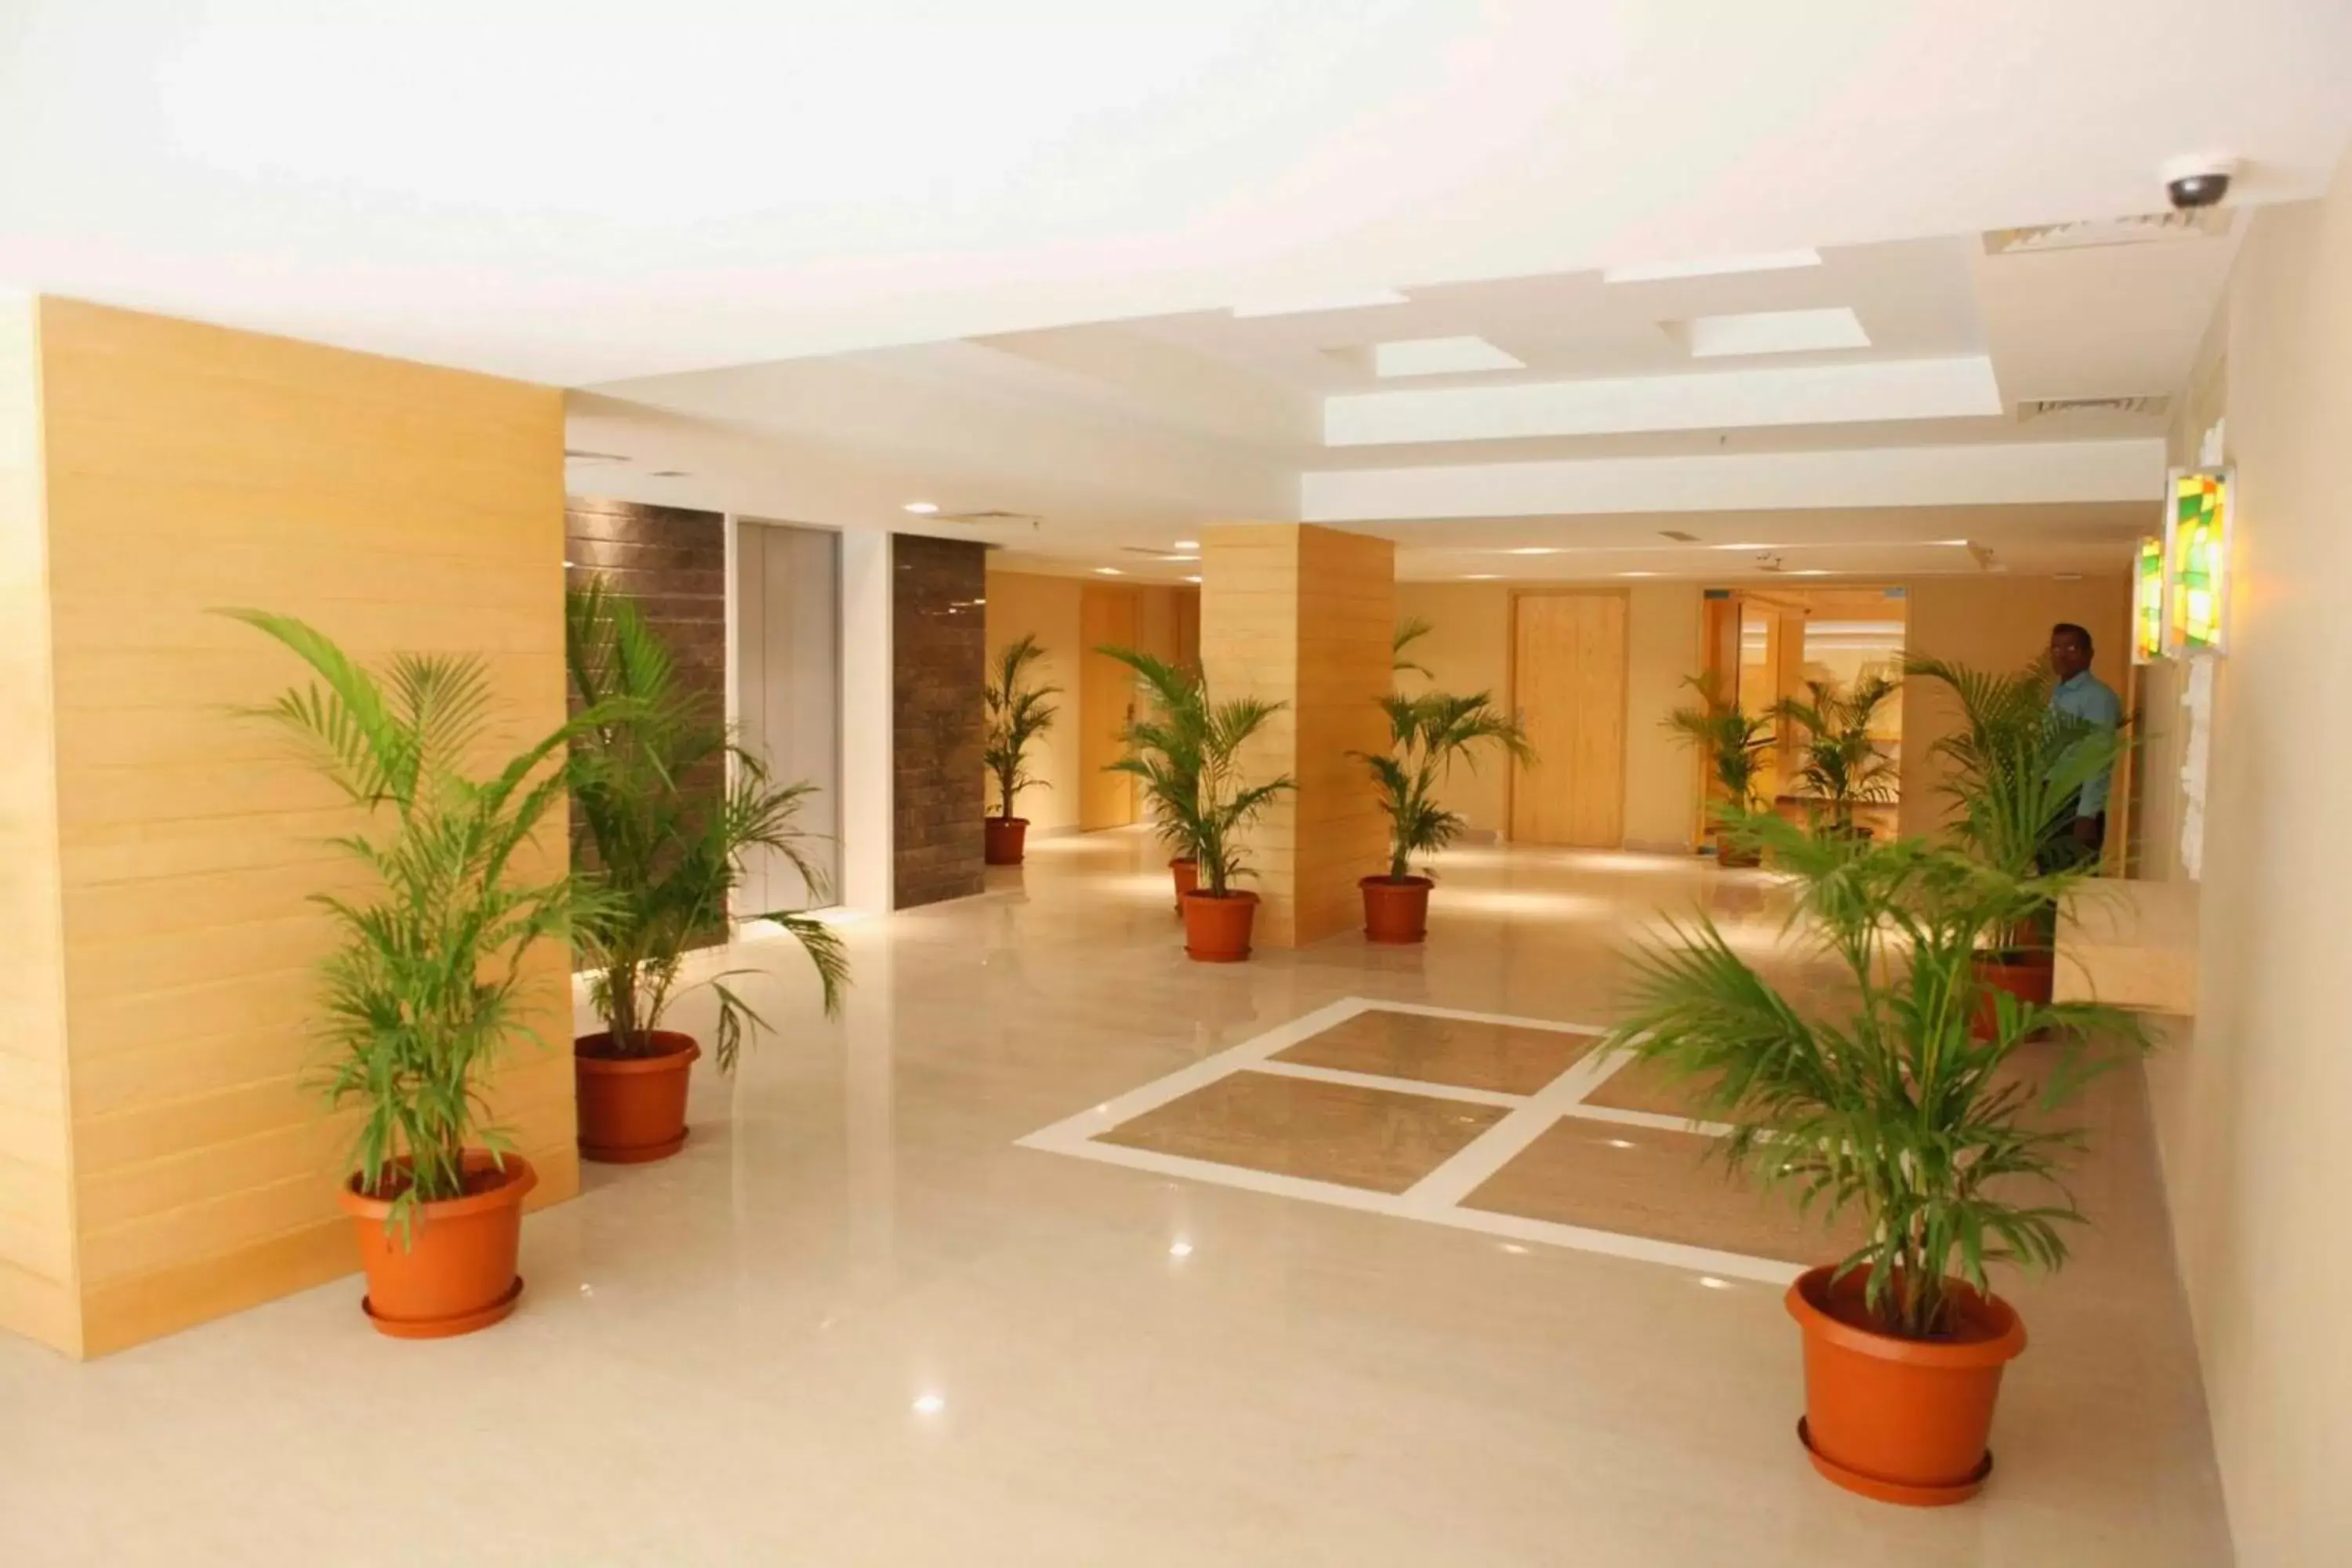 Area and facilities, Lobby/Reception in Lemon Tree Hotel Shimona Chennai